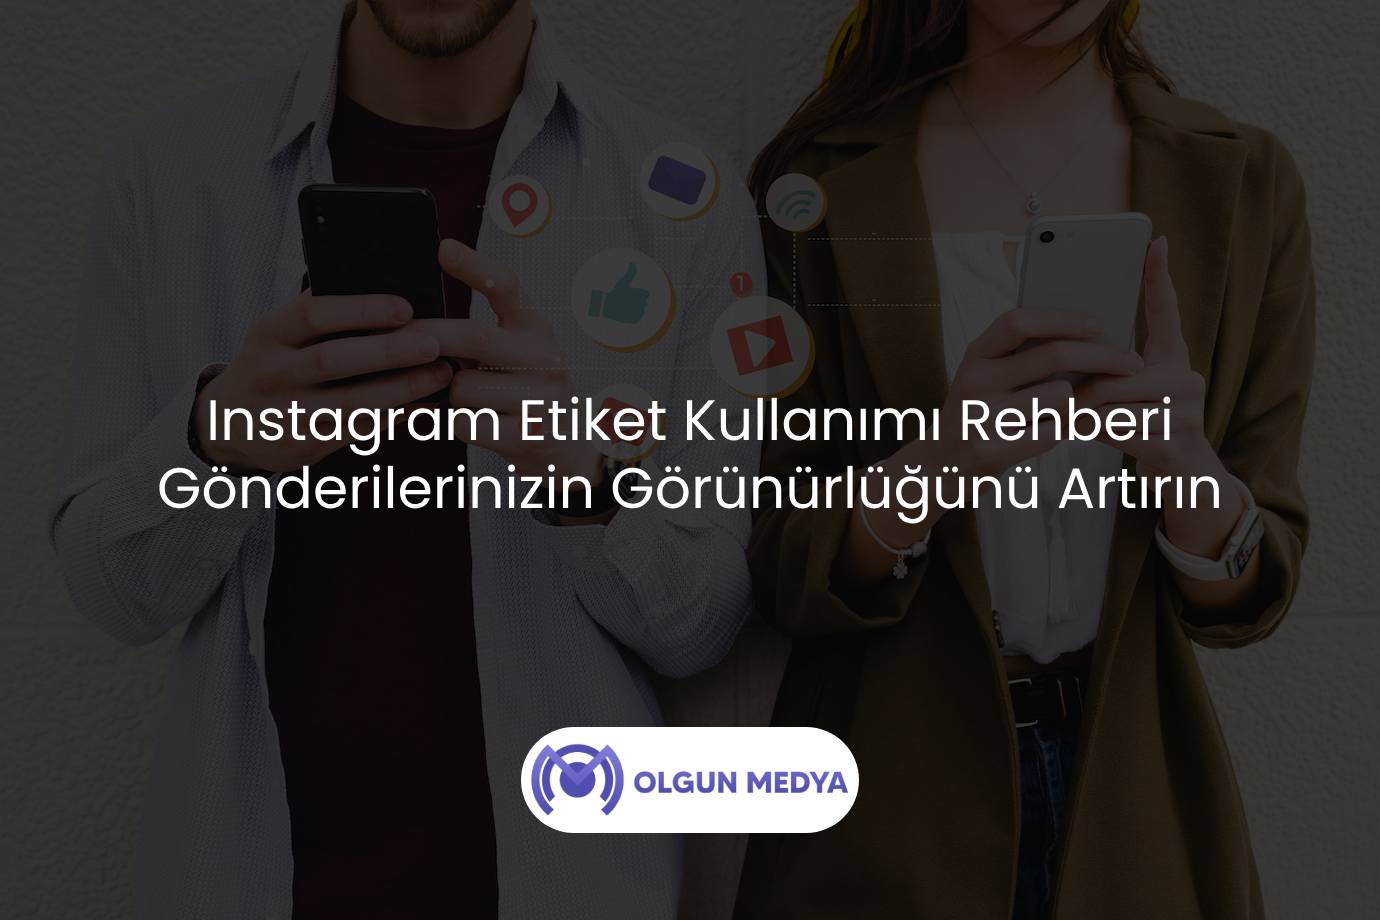 Instagram Etiket Kullanımı Rehberi Gönderilerinizin Görünürlüğünü Artırın